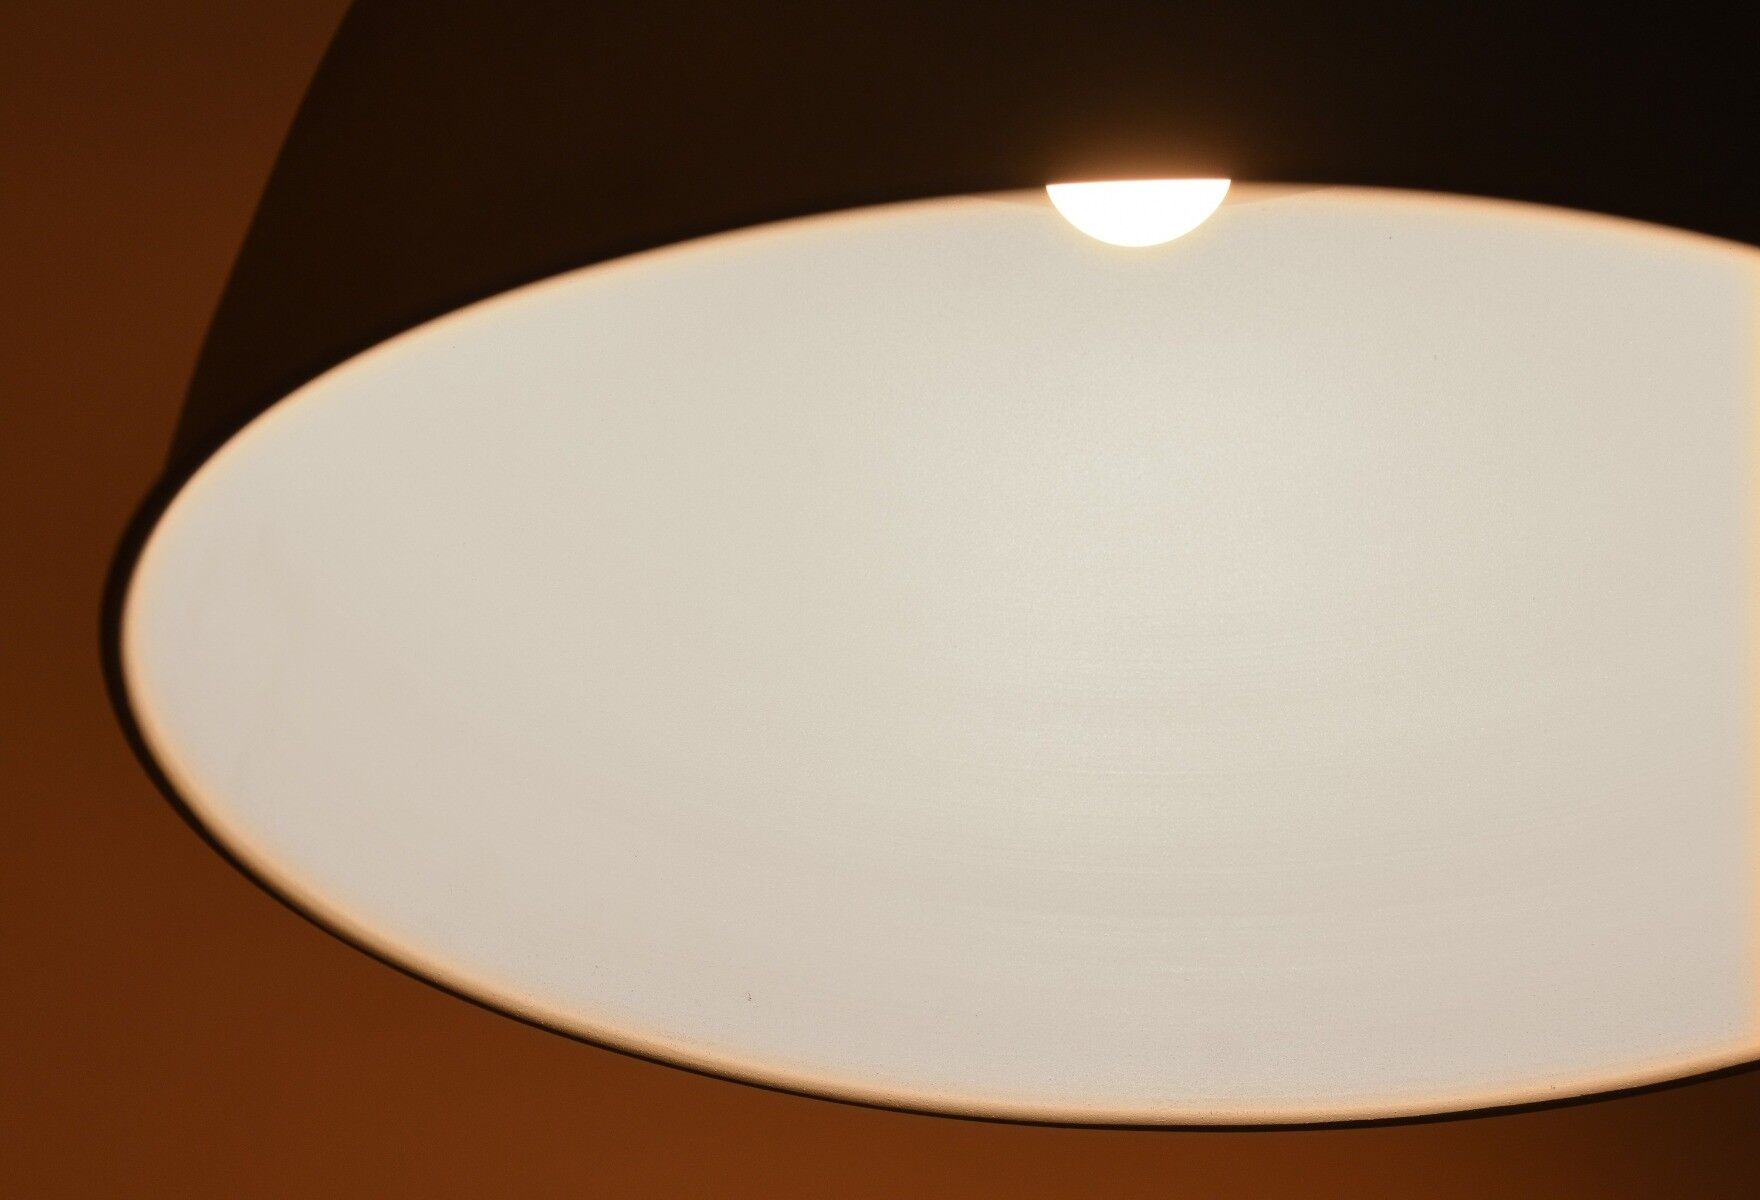 Lampa wisząca Dome 42x42x42cm